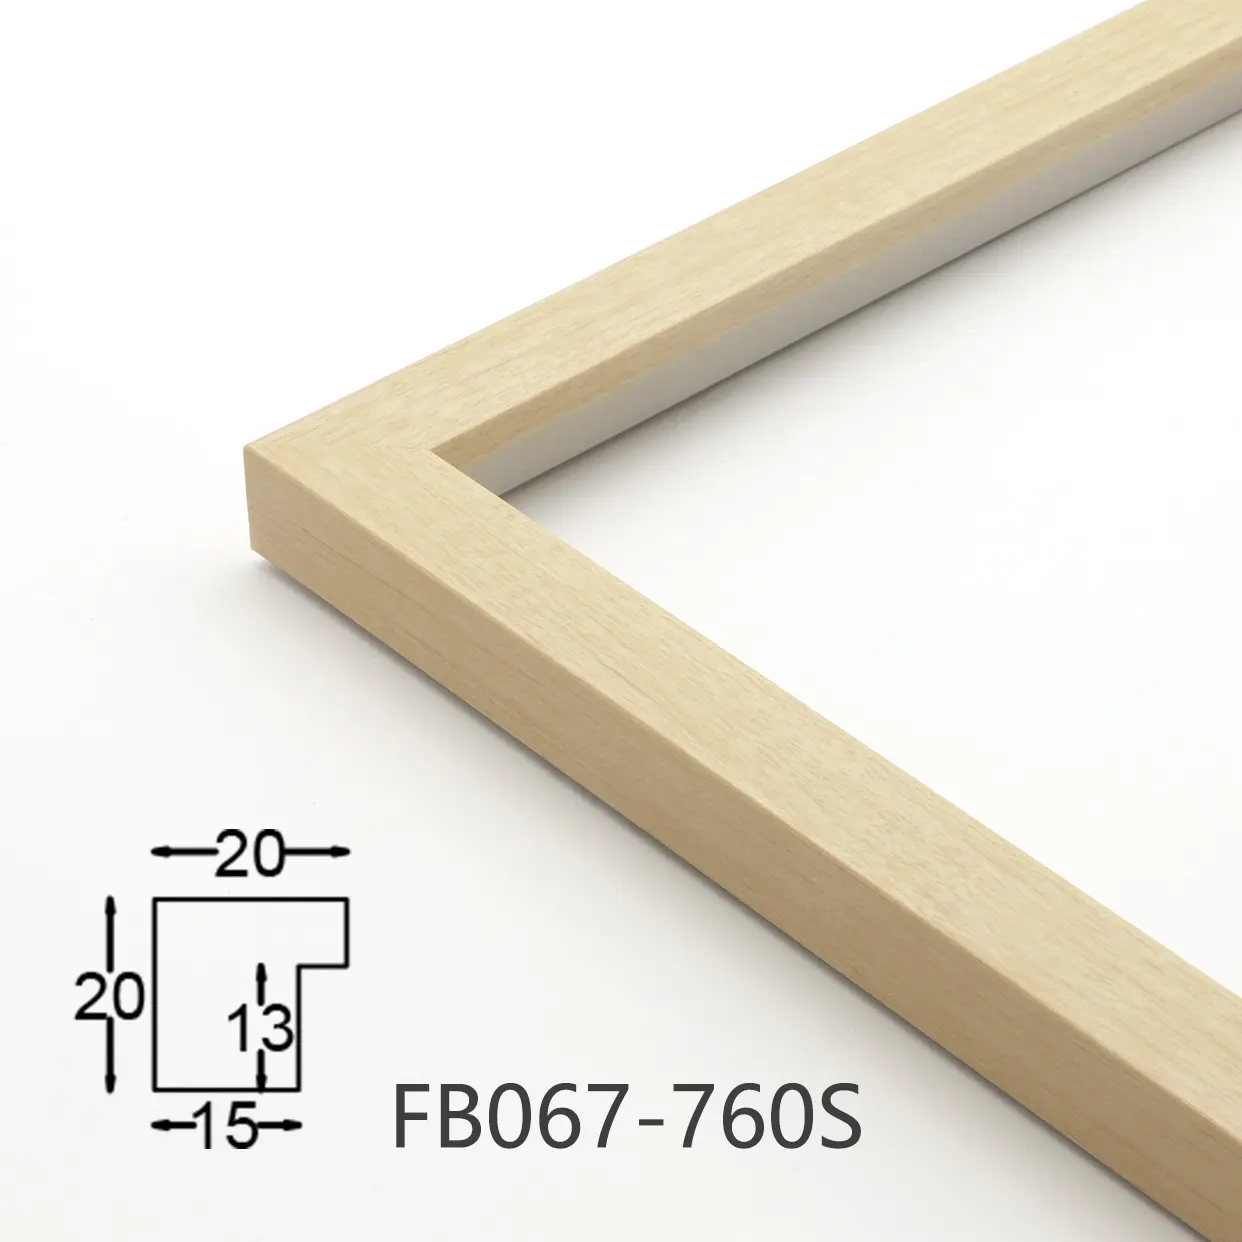 2x2cm frame stick supplier for home decor